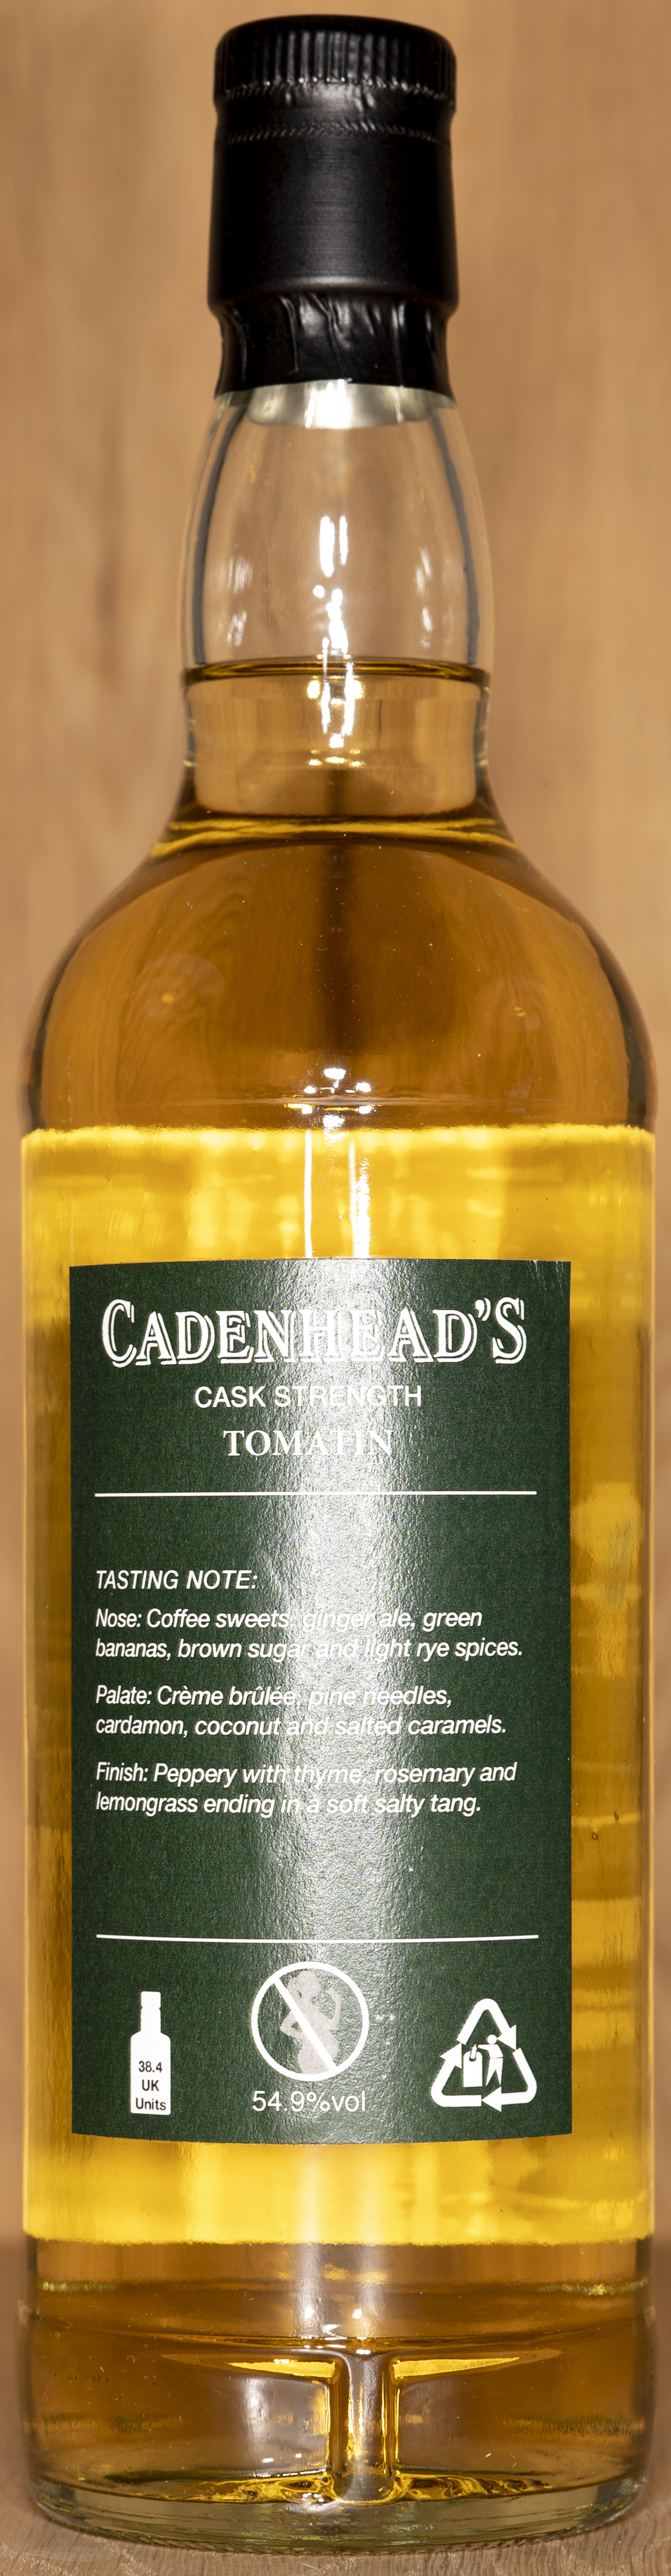 Billede: DSC_5005 - Cadenheads Authentic Collection Tomation 10 - bottle back.jpg